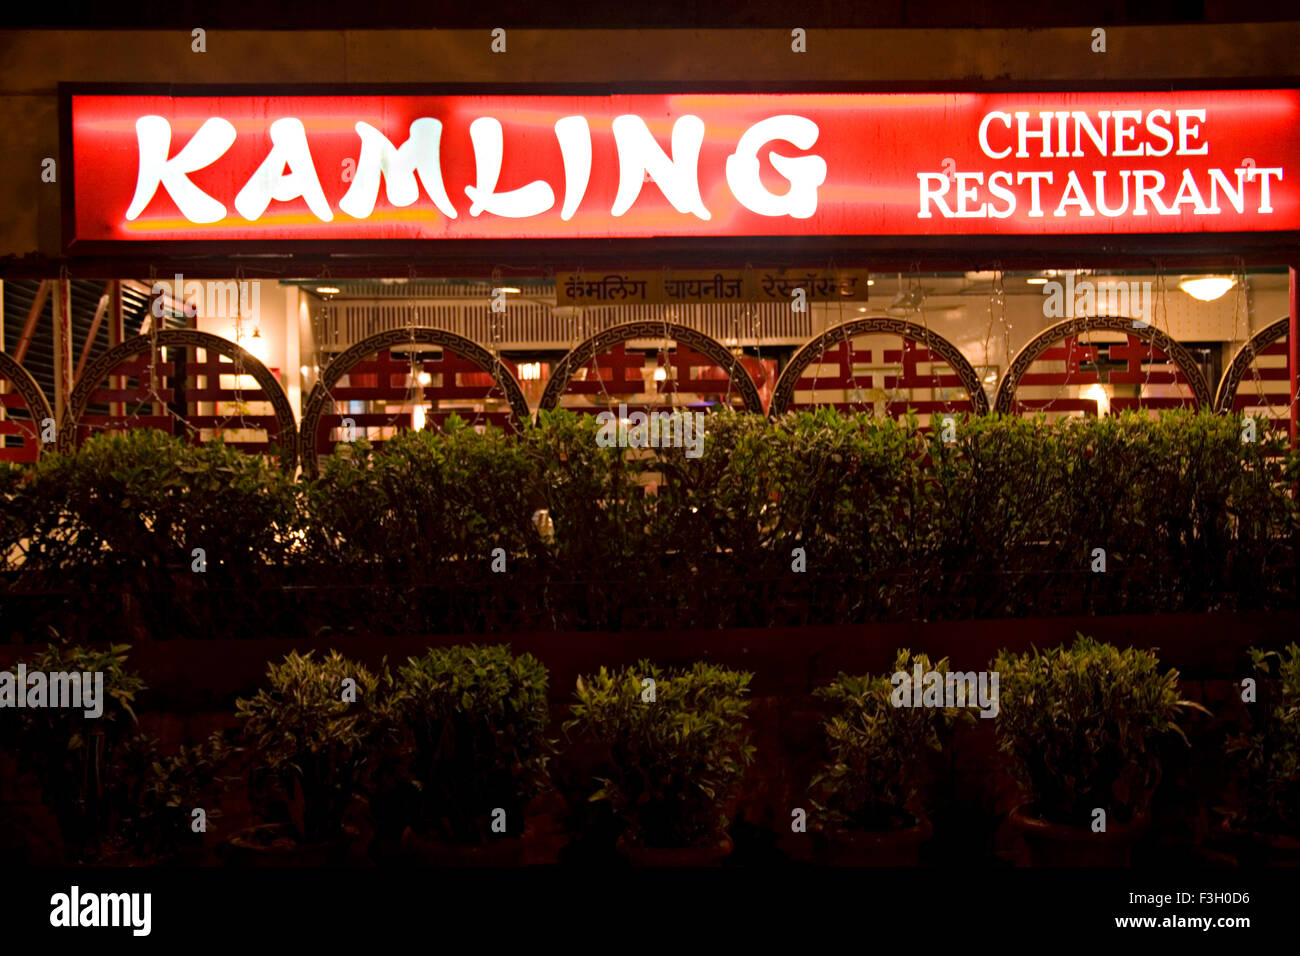 Kamling restaurant chinois sert des plats végétariens et non végétariens ; Inde Banque D'Images